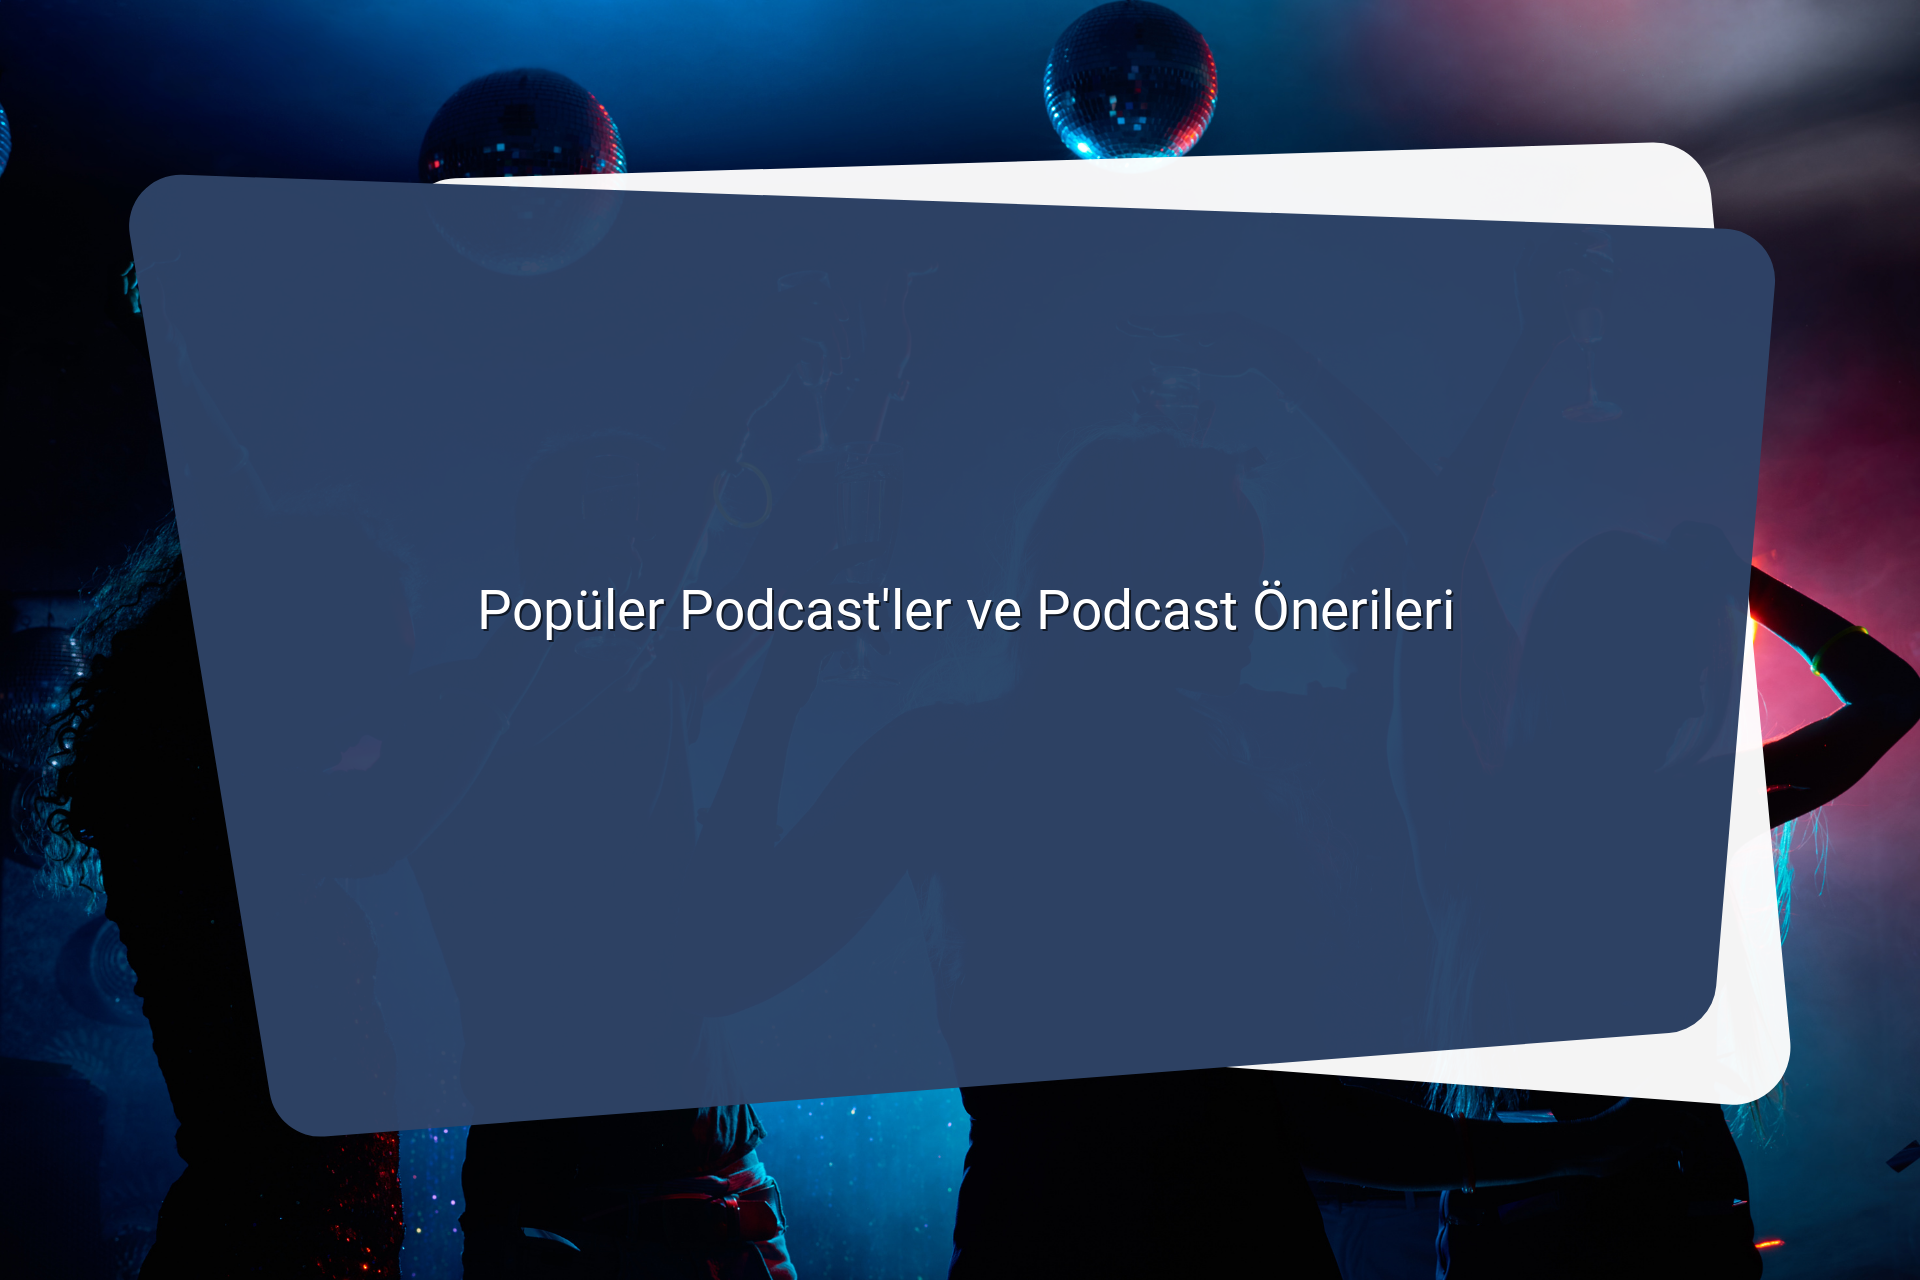 Populer Podcastler ve Podcast Onerileri